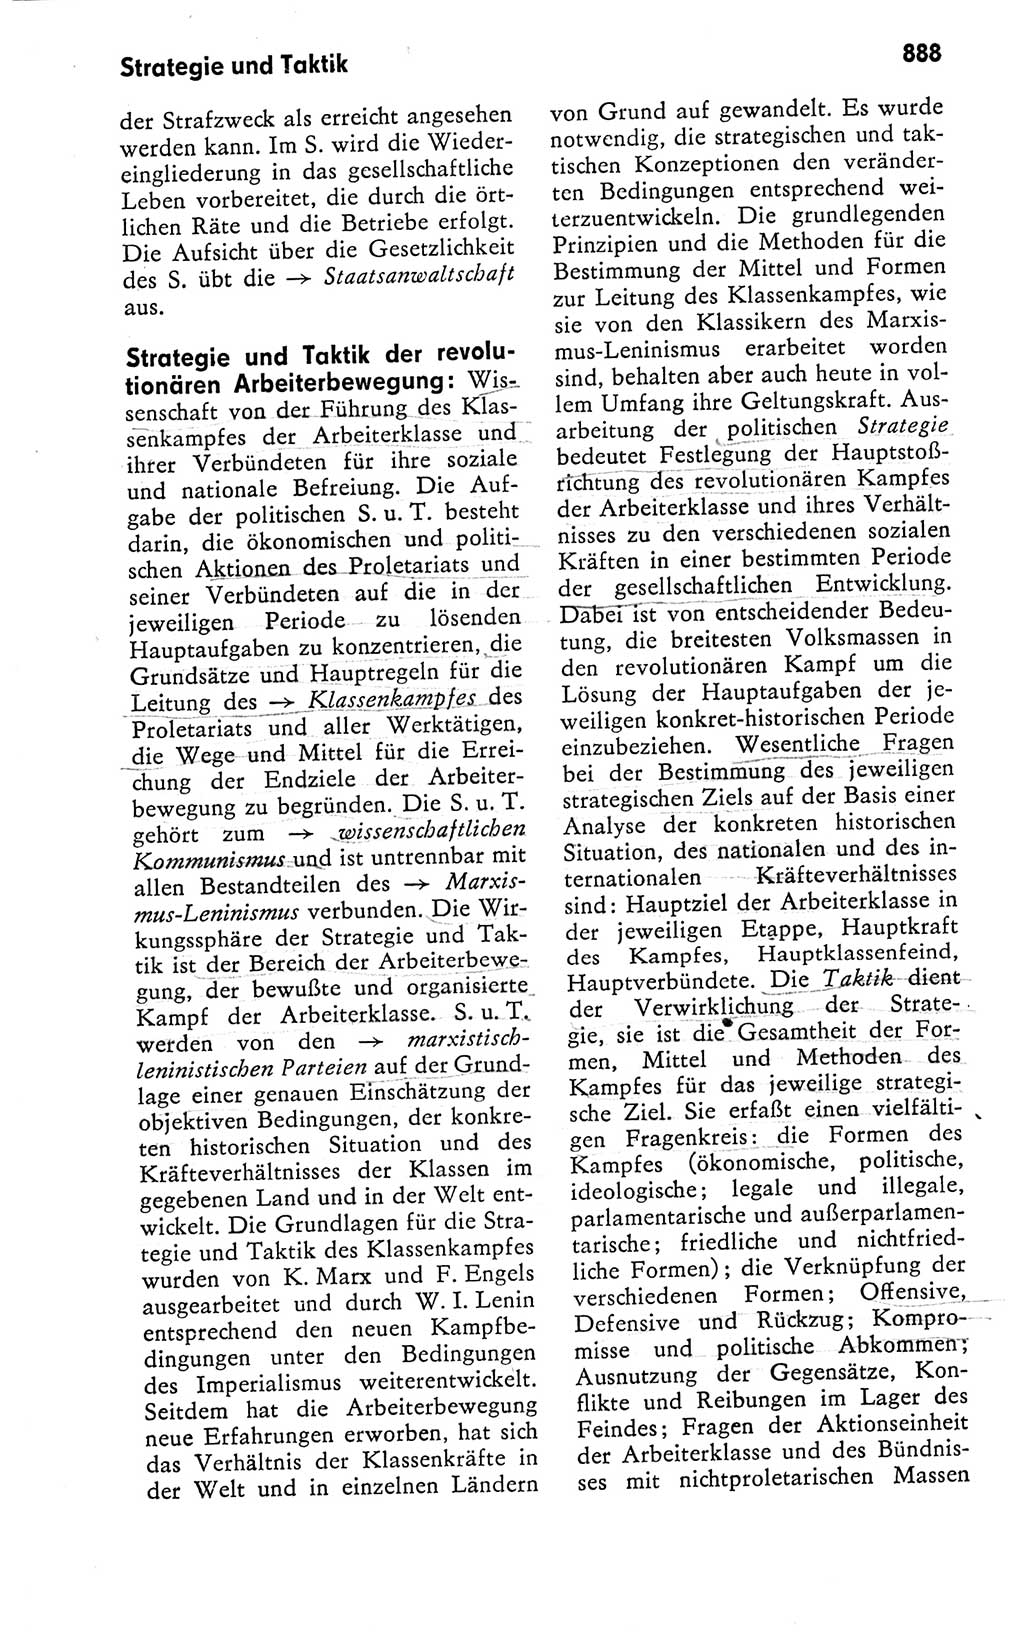 Kleines politisches Wörterbuch [Deutsche Demokratische Republik (DDR)] 1978, Seite 888 (Kl. pol. Wb. DDR 1978, S. 888)